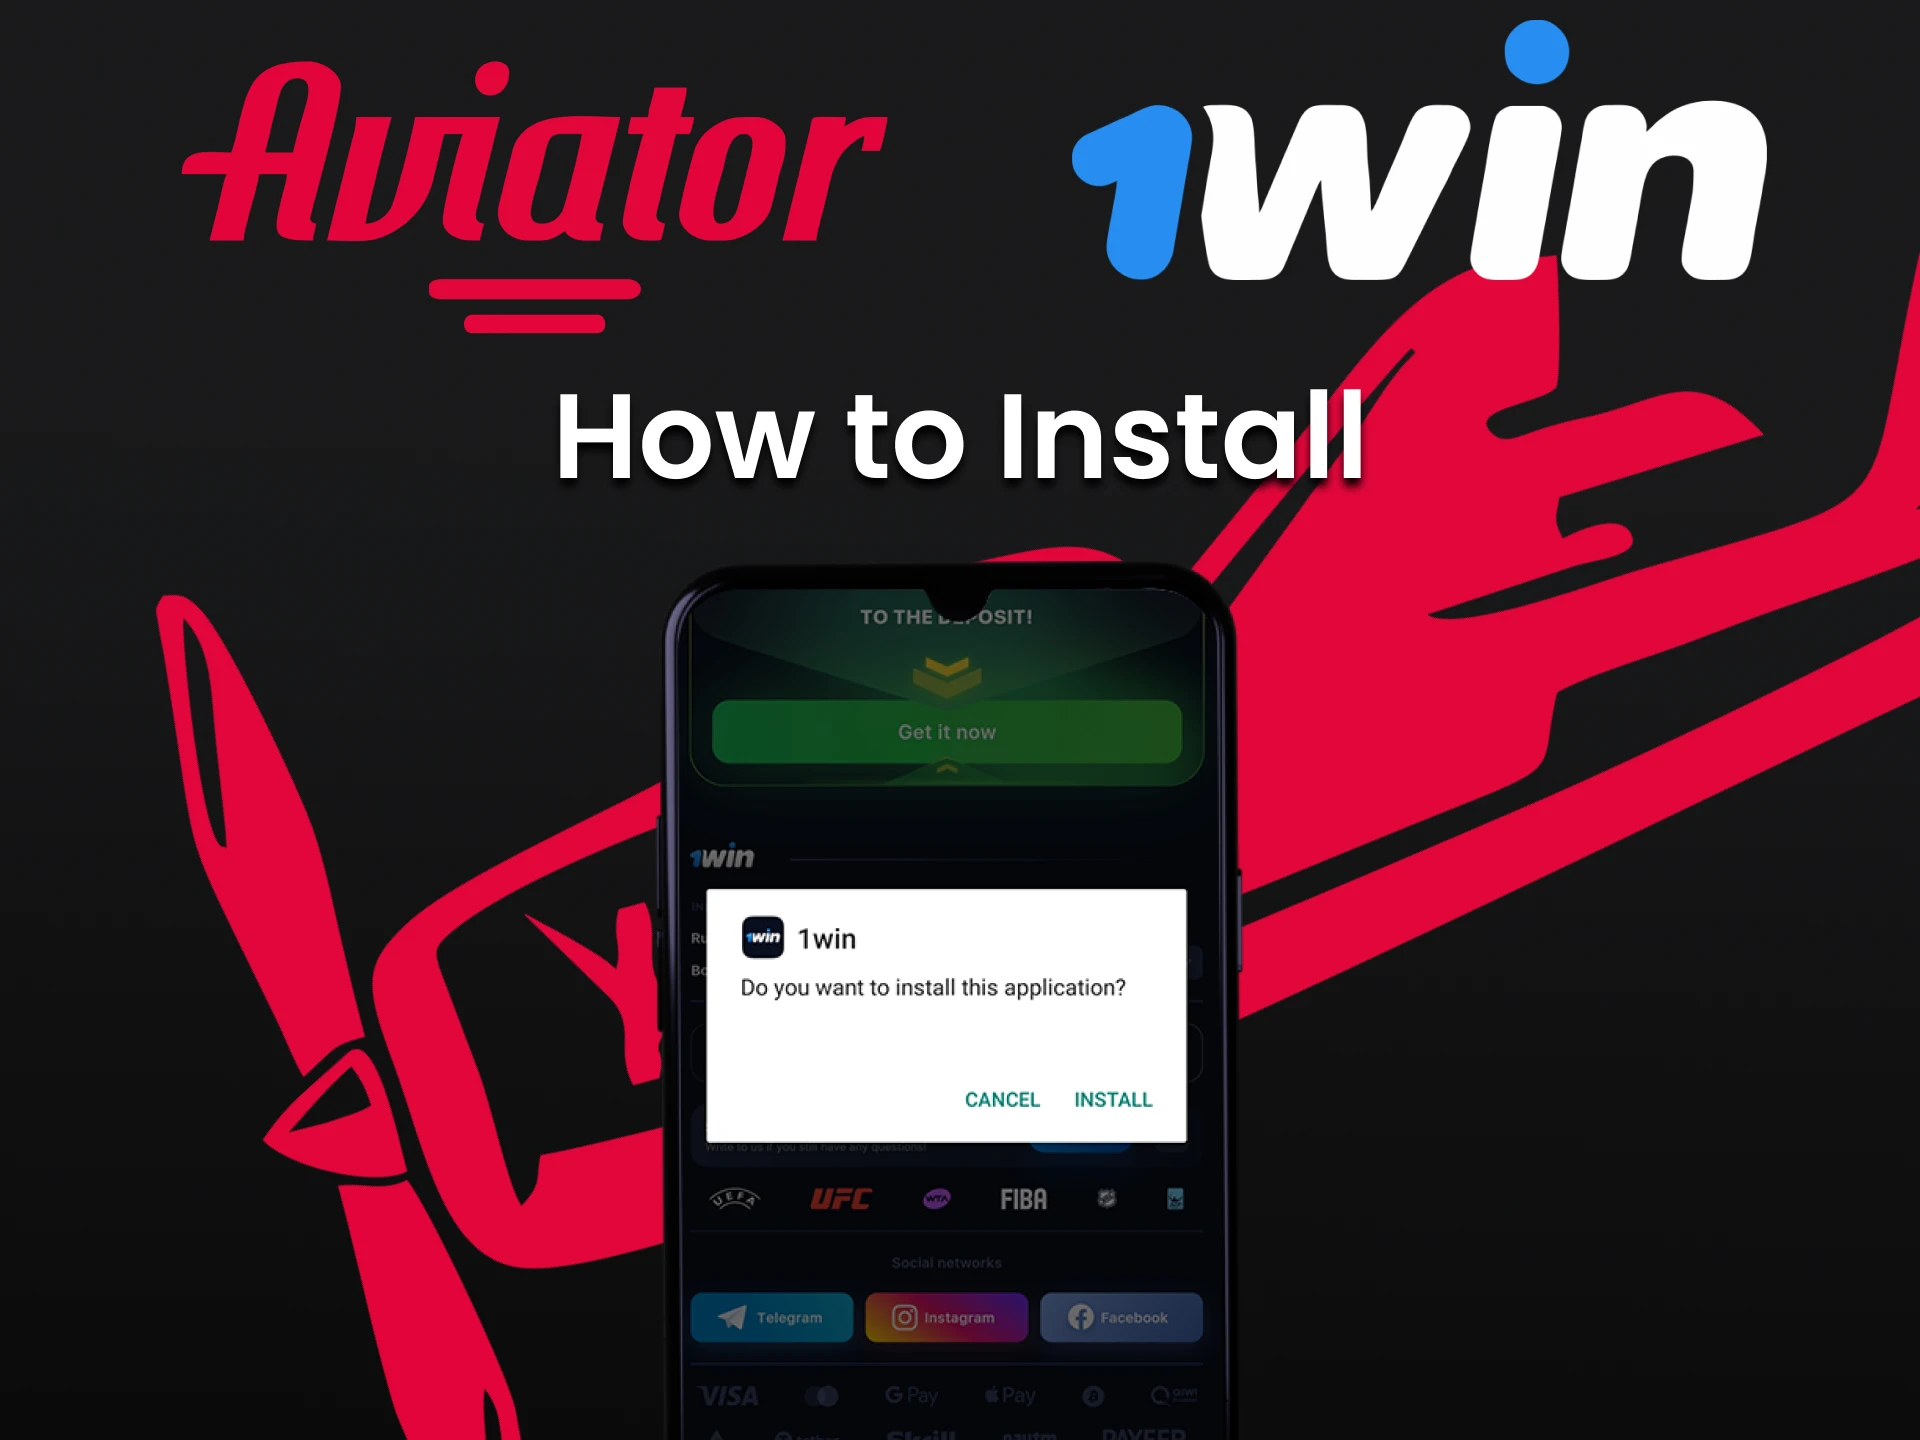 Siga o processo de instalação do aplicativo 1win para jogar o Aviator.